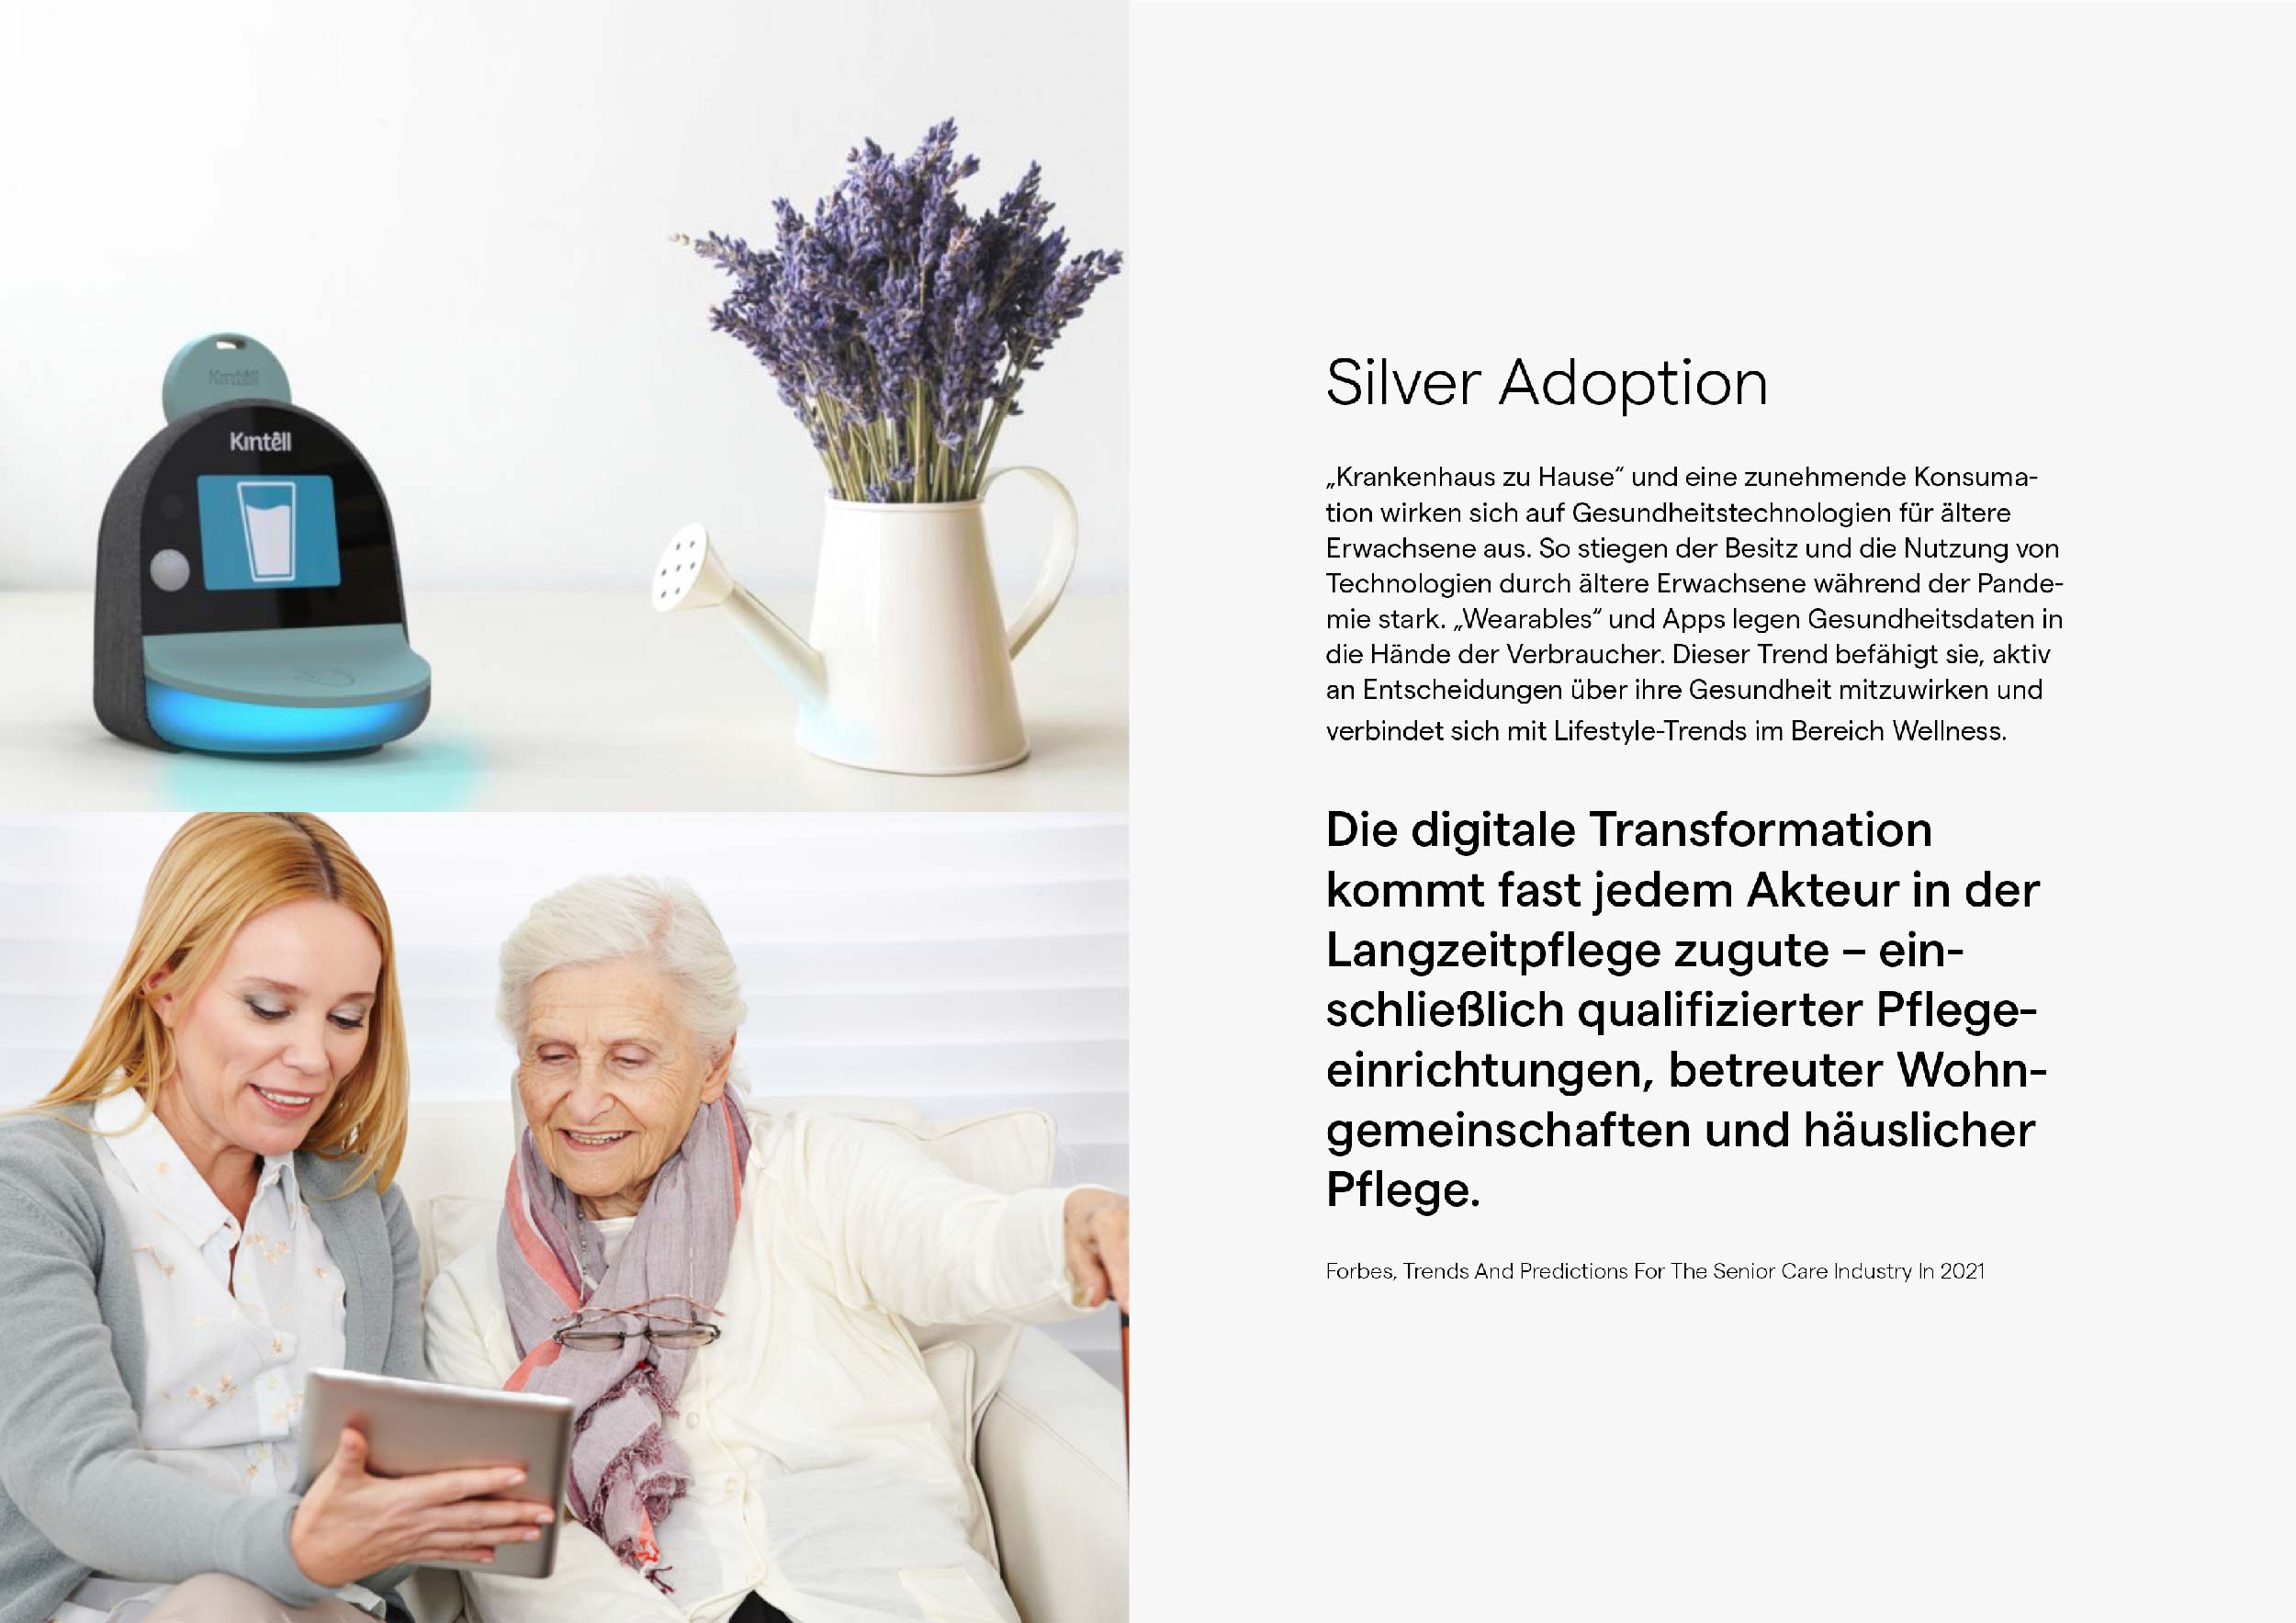 Silver Adoption: „Krankenhaus zu Hause“ und eine zunehmende Konsumation wirken sich auf Gesundheitstechnologien für ältere Erwachsene aus.